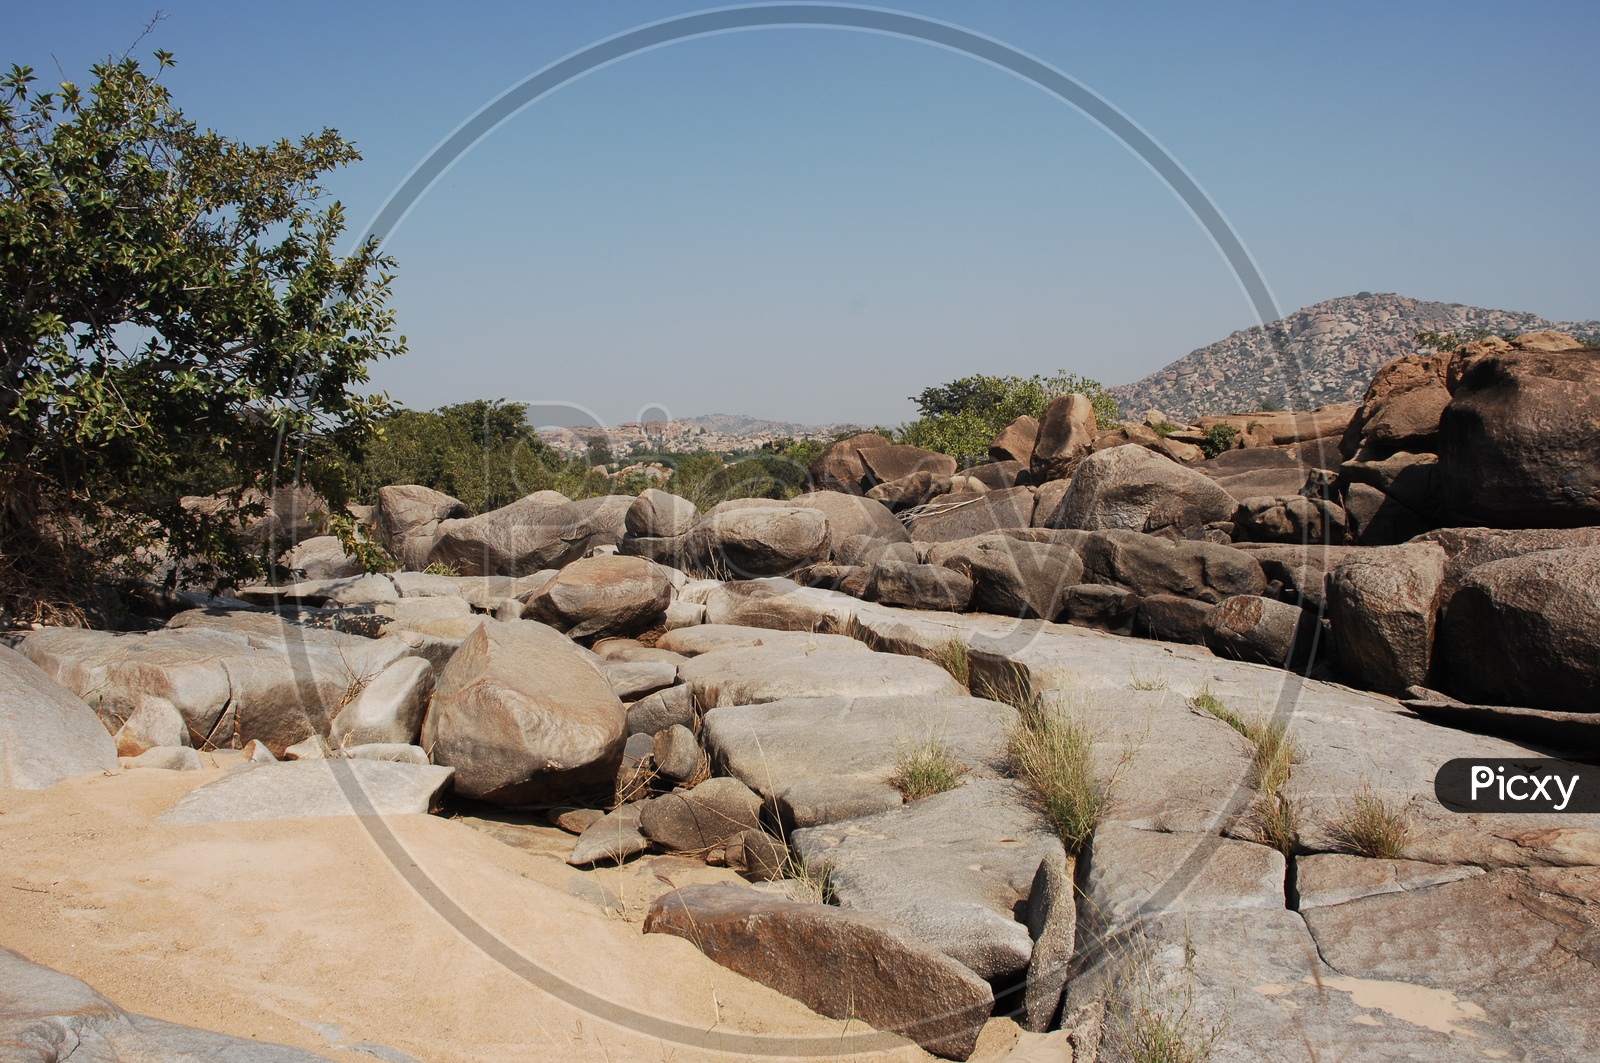 Massive boulders of Granite